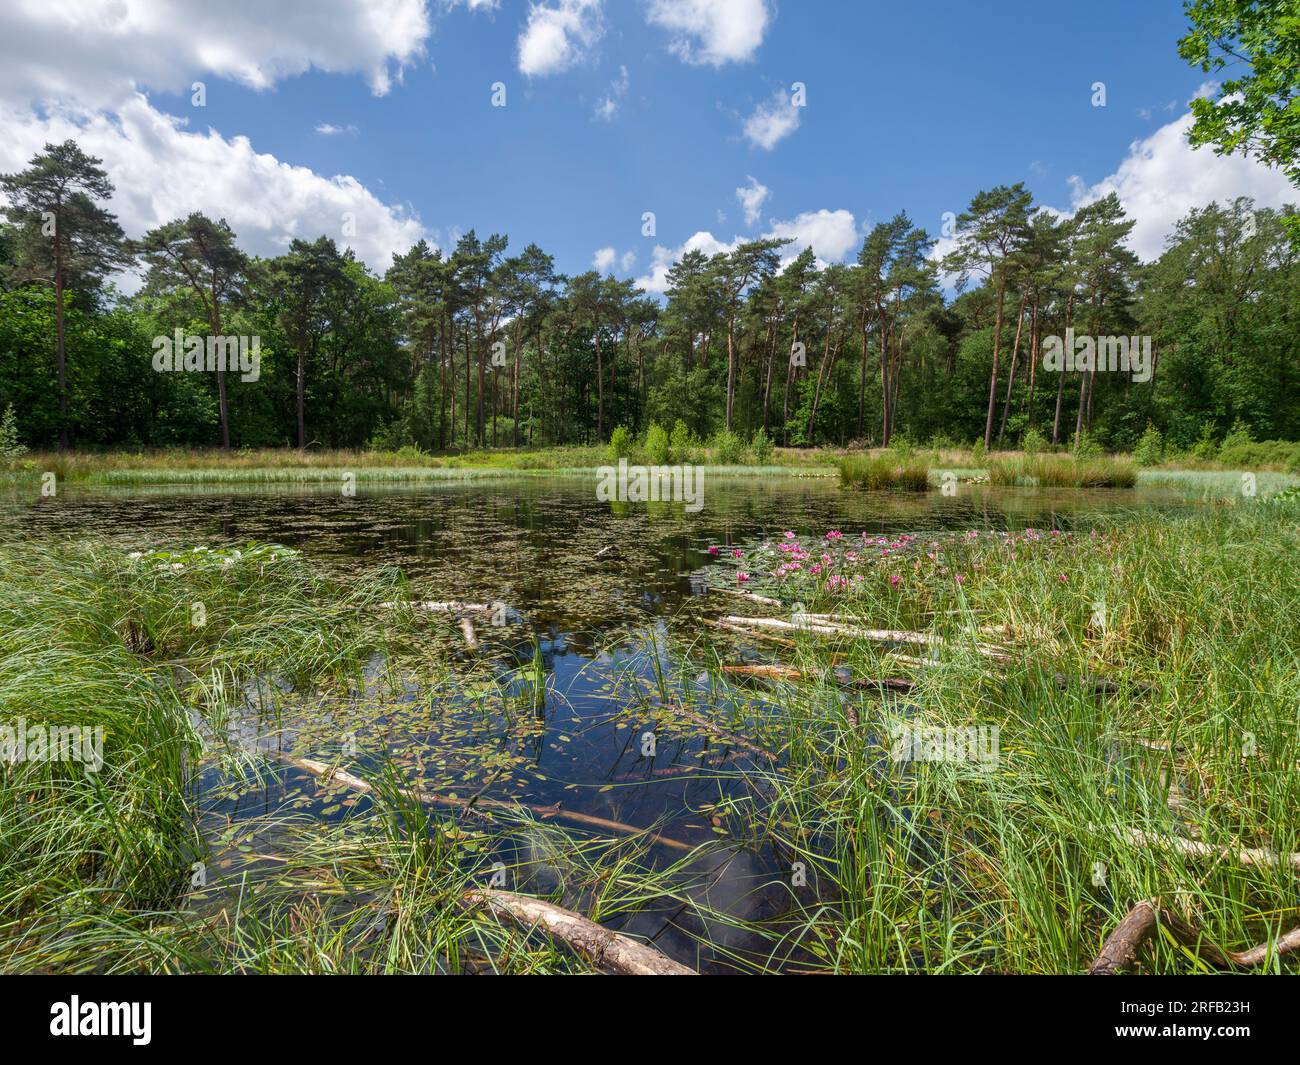 Lelie ven pond in woodland between Heeze and Geldrop, North Brabant, Netherlands. Stock Photo